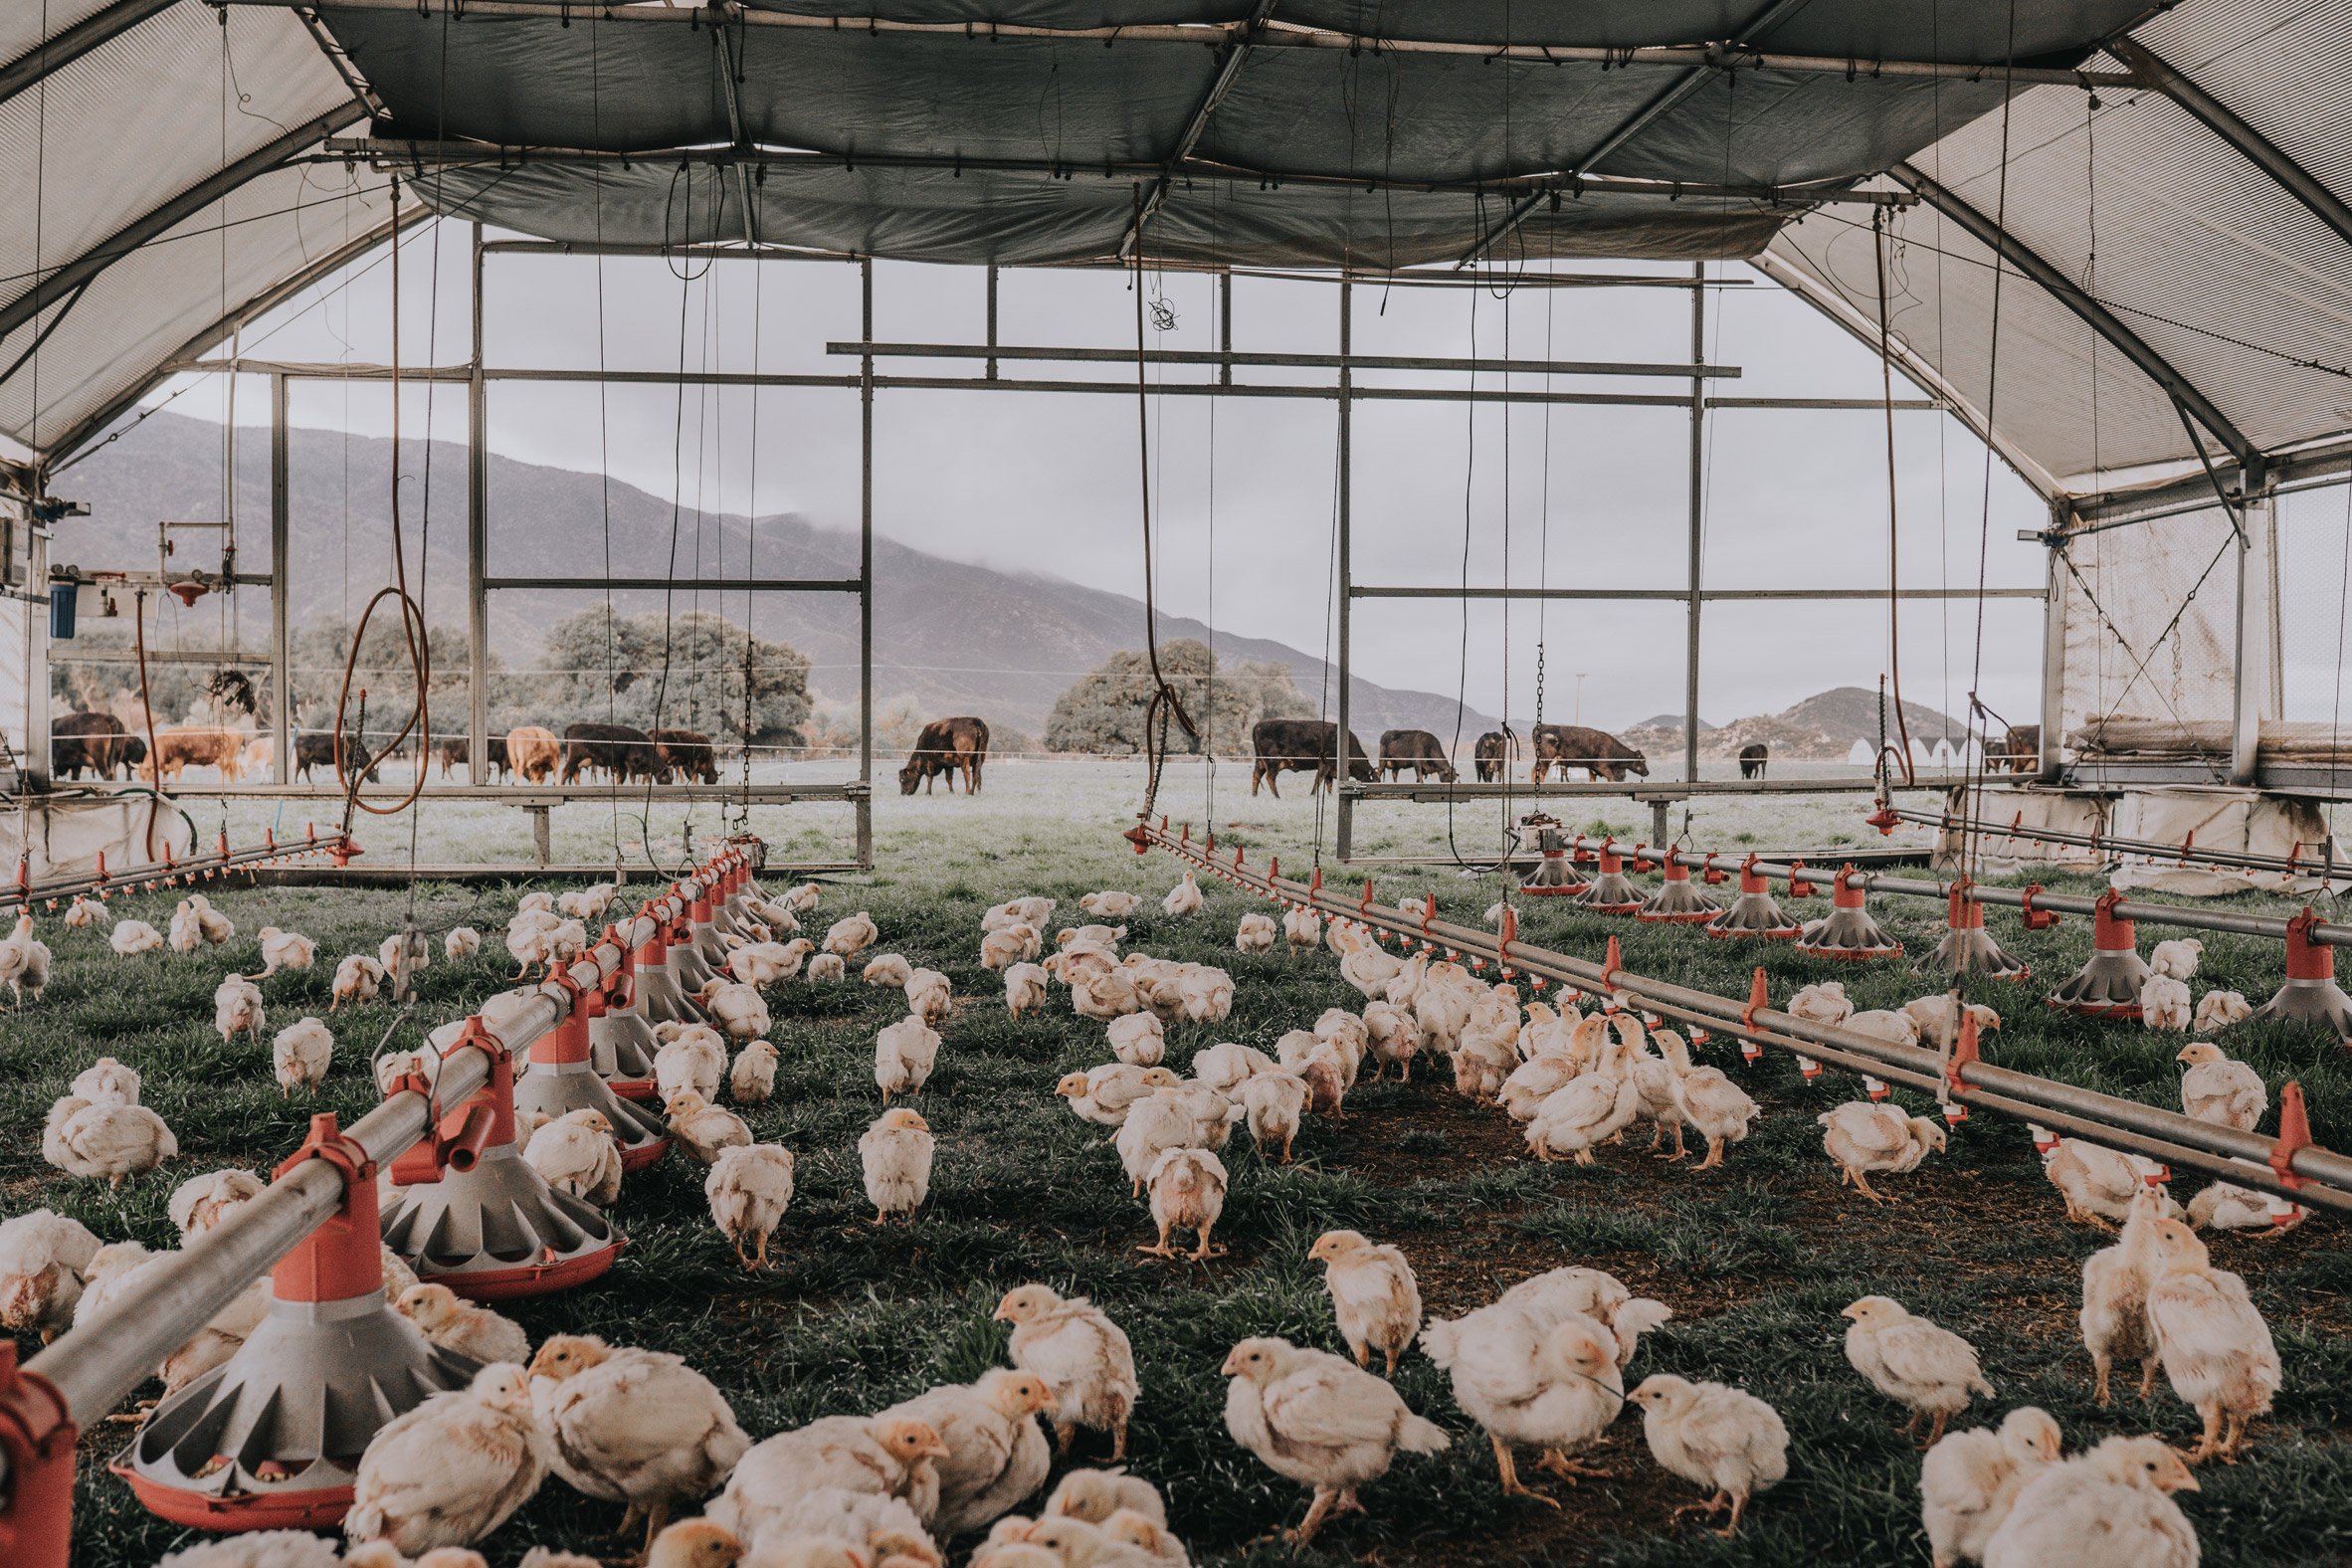 III. Benefits of Incorporating Hens in Regenerative Farming Practices